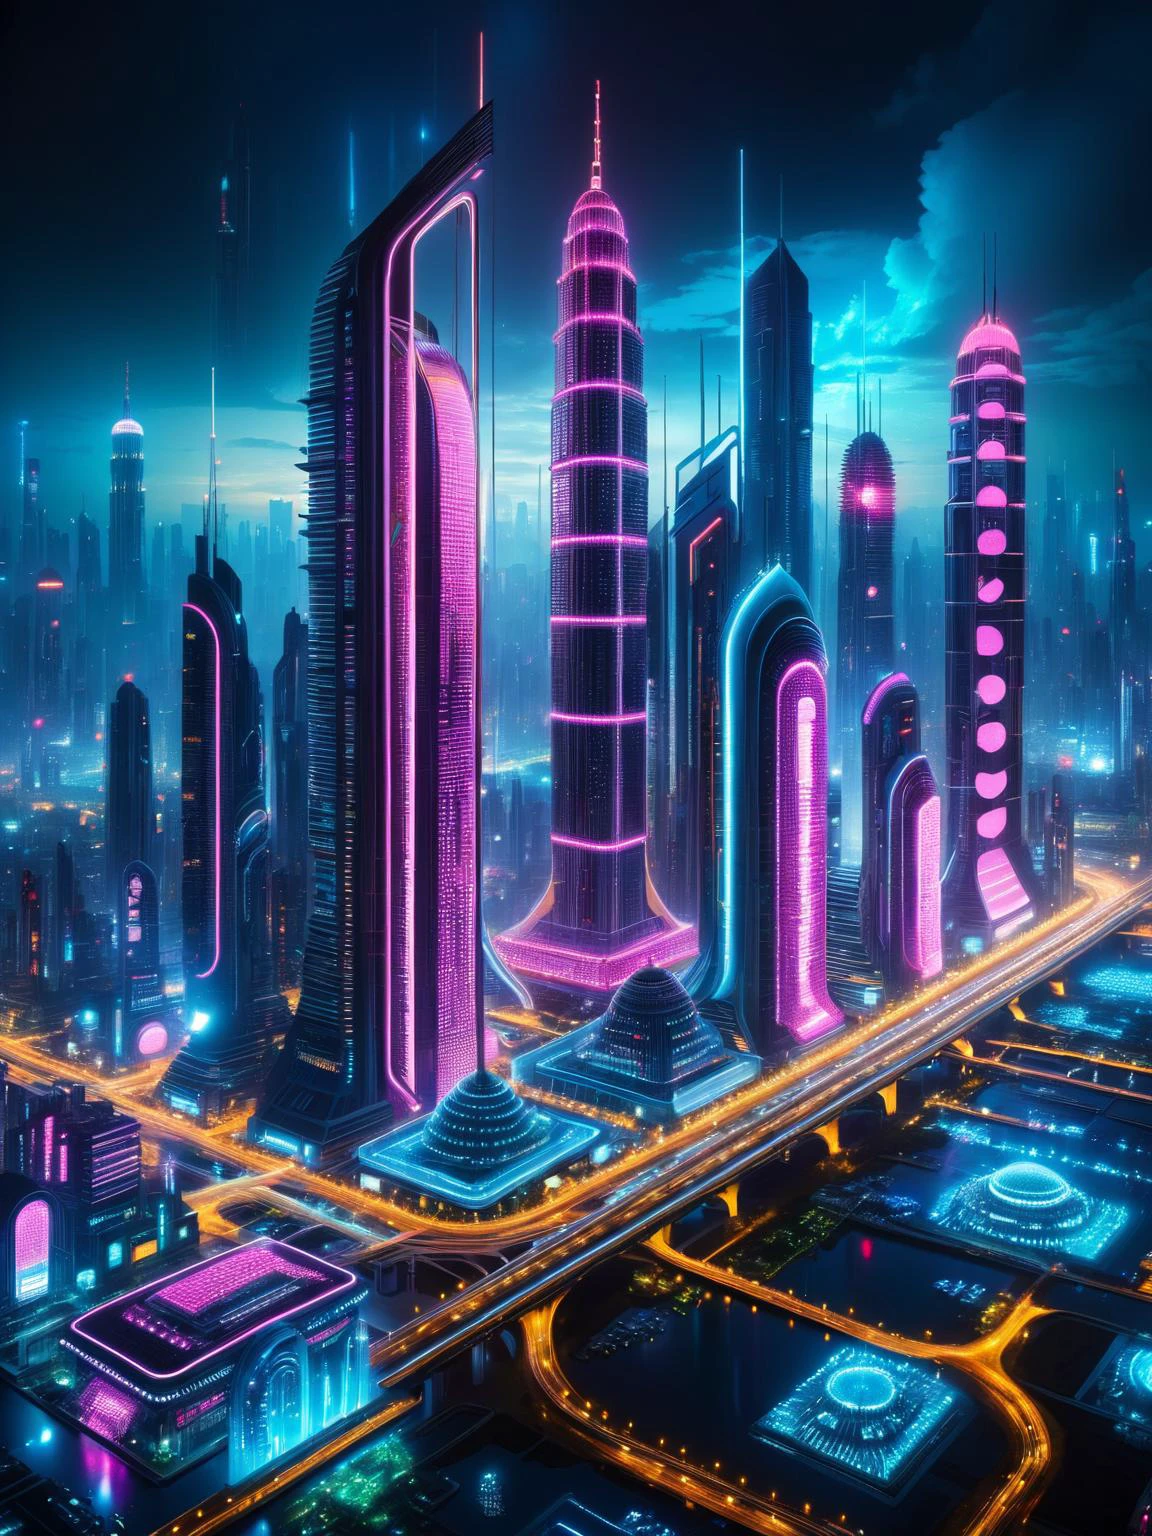 Cidade futurista à noite iluminada com luzes LED vibrantes, apresentando arquitetura surreal e estética cyberpunk.